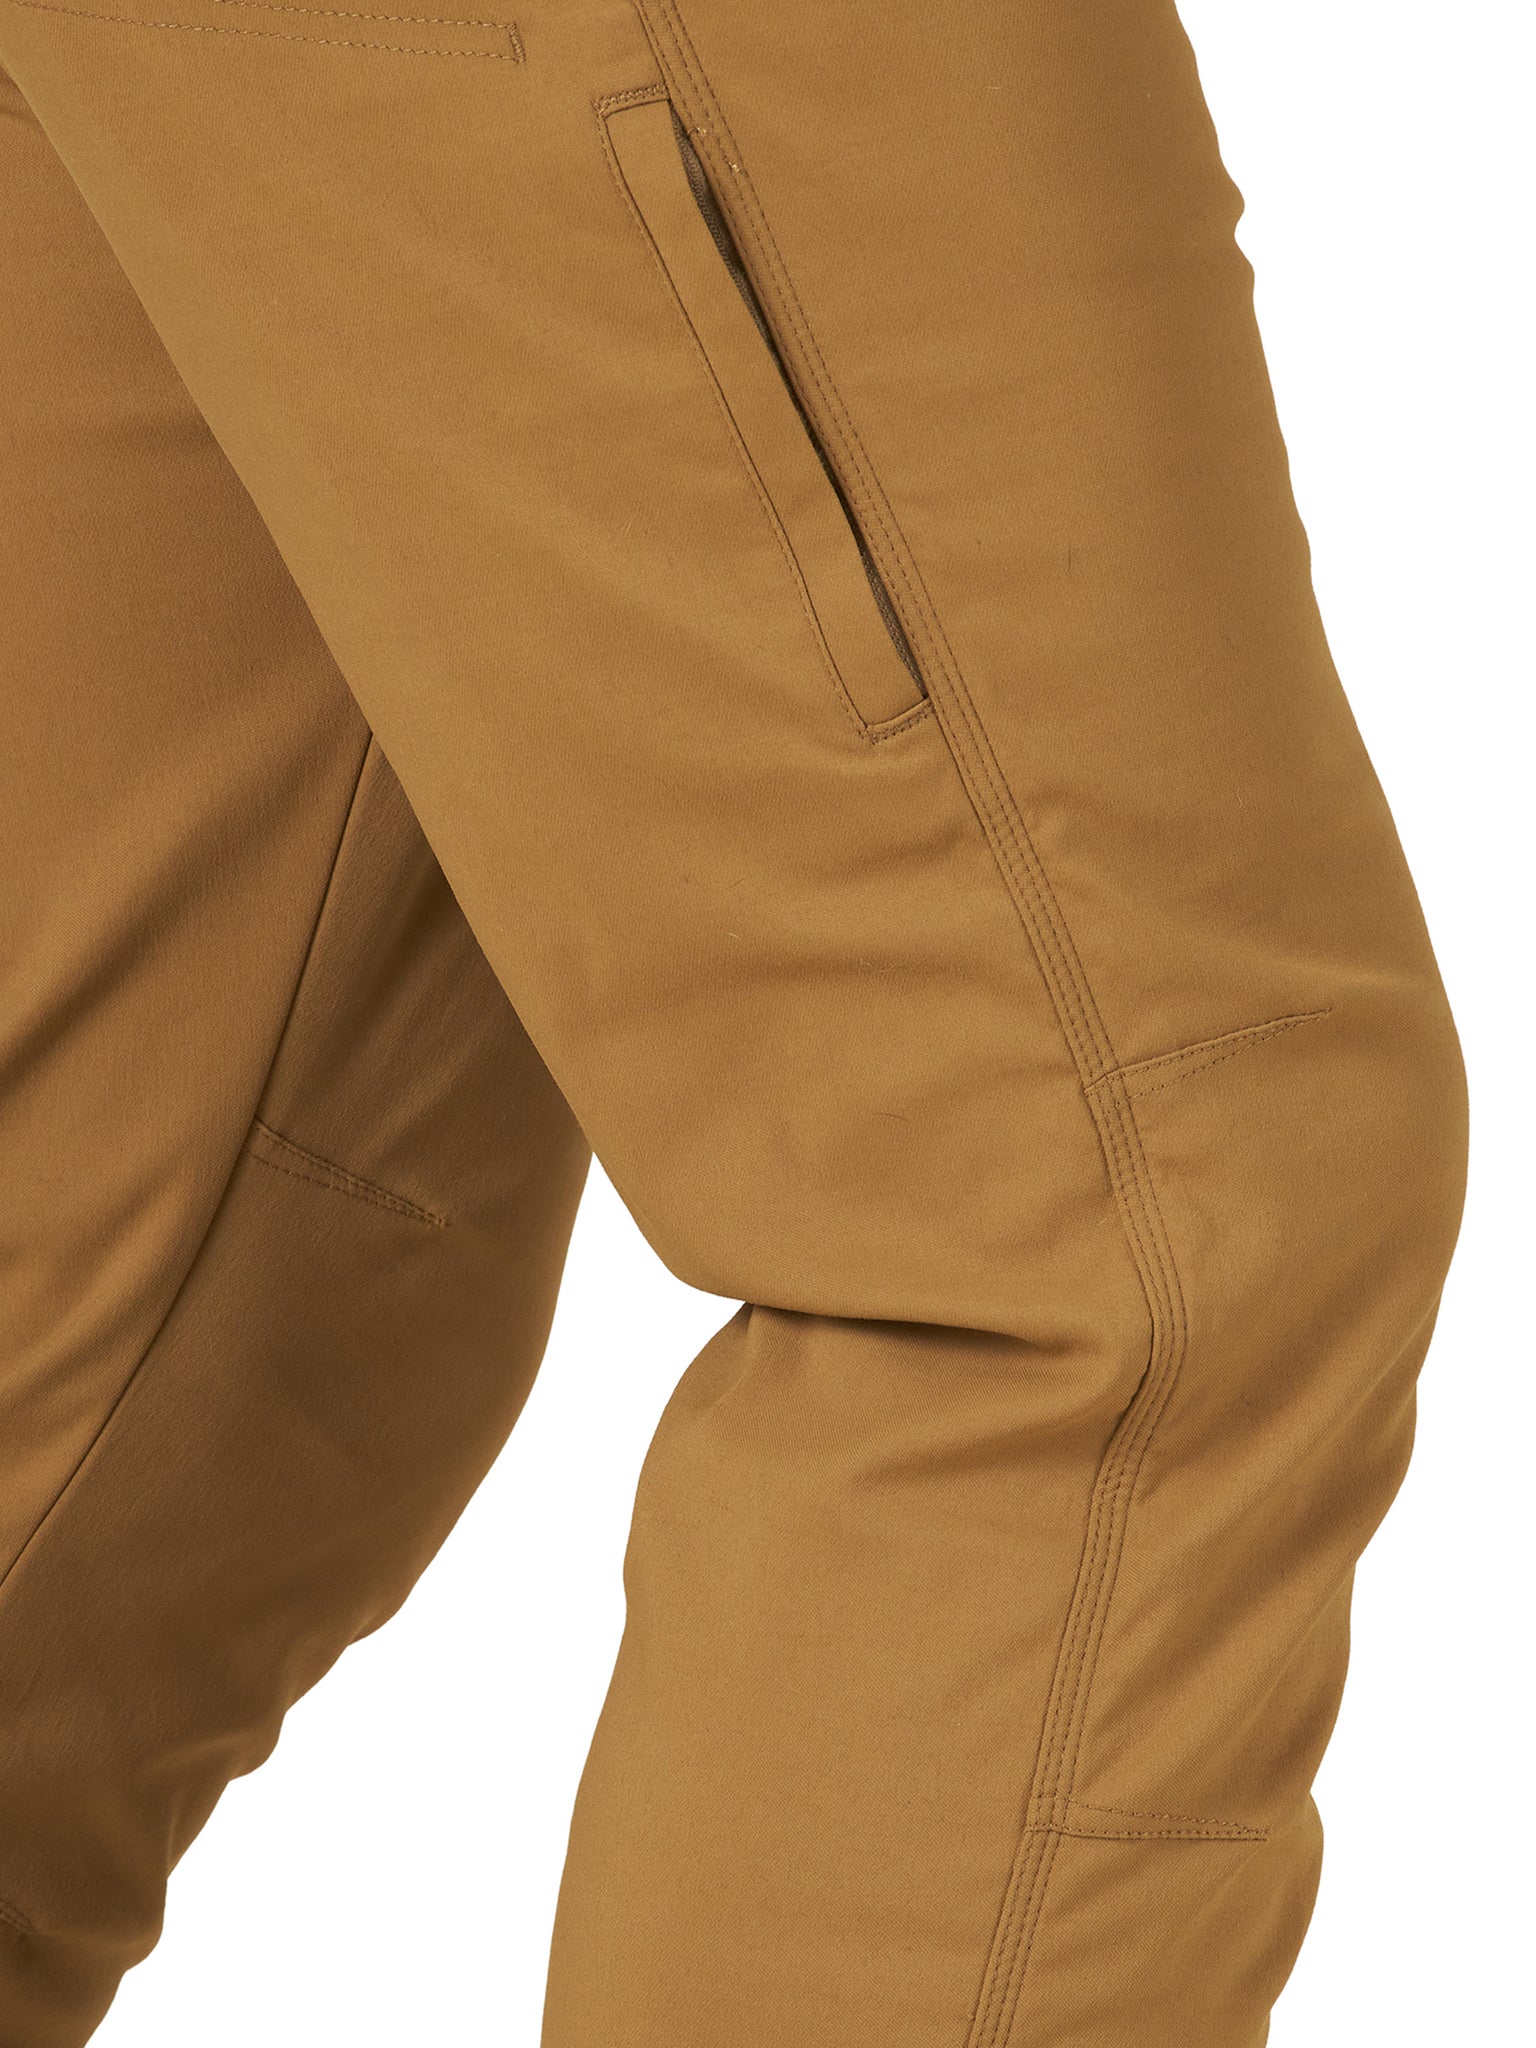  ATG by Wrangler Men's Fleece Lined Utility Pant